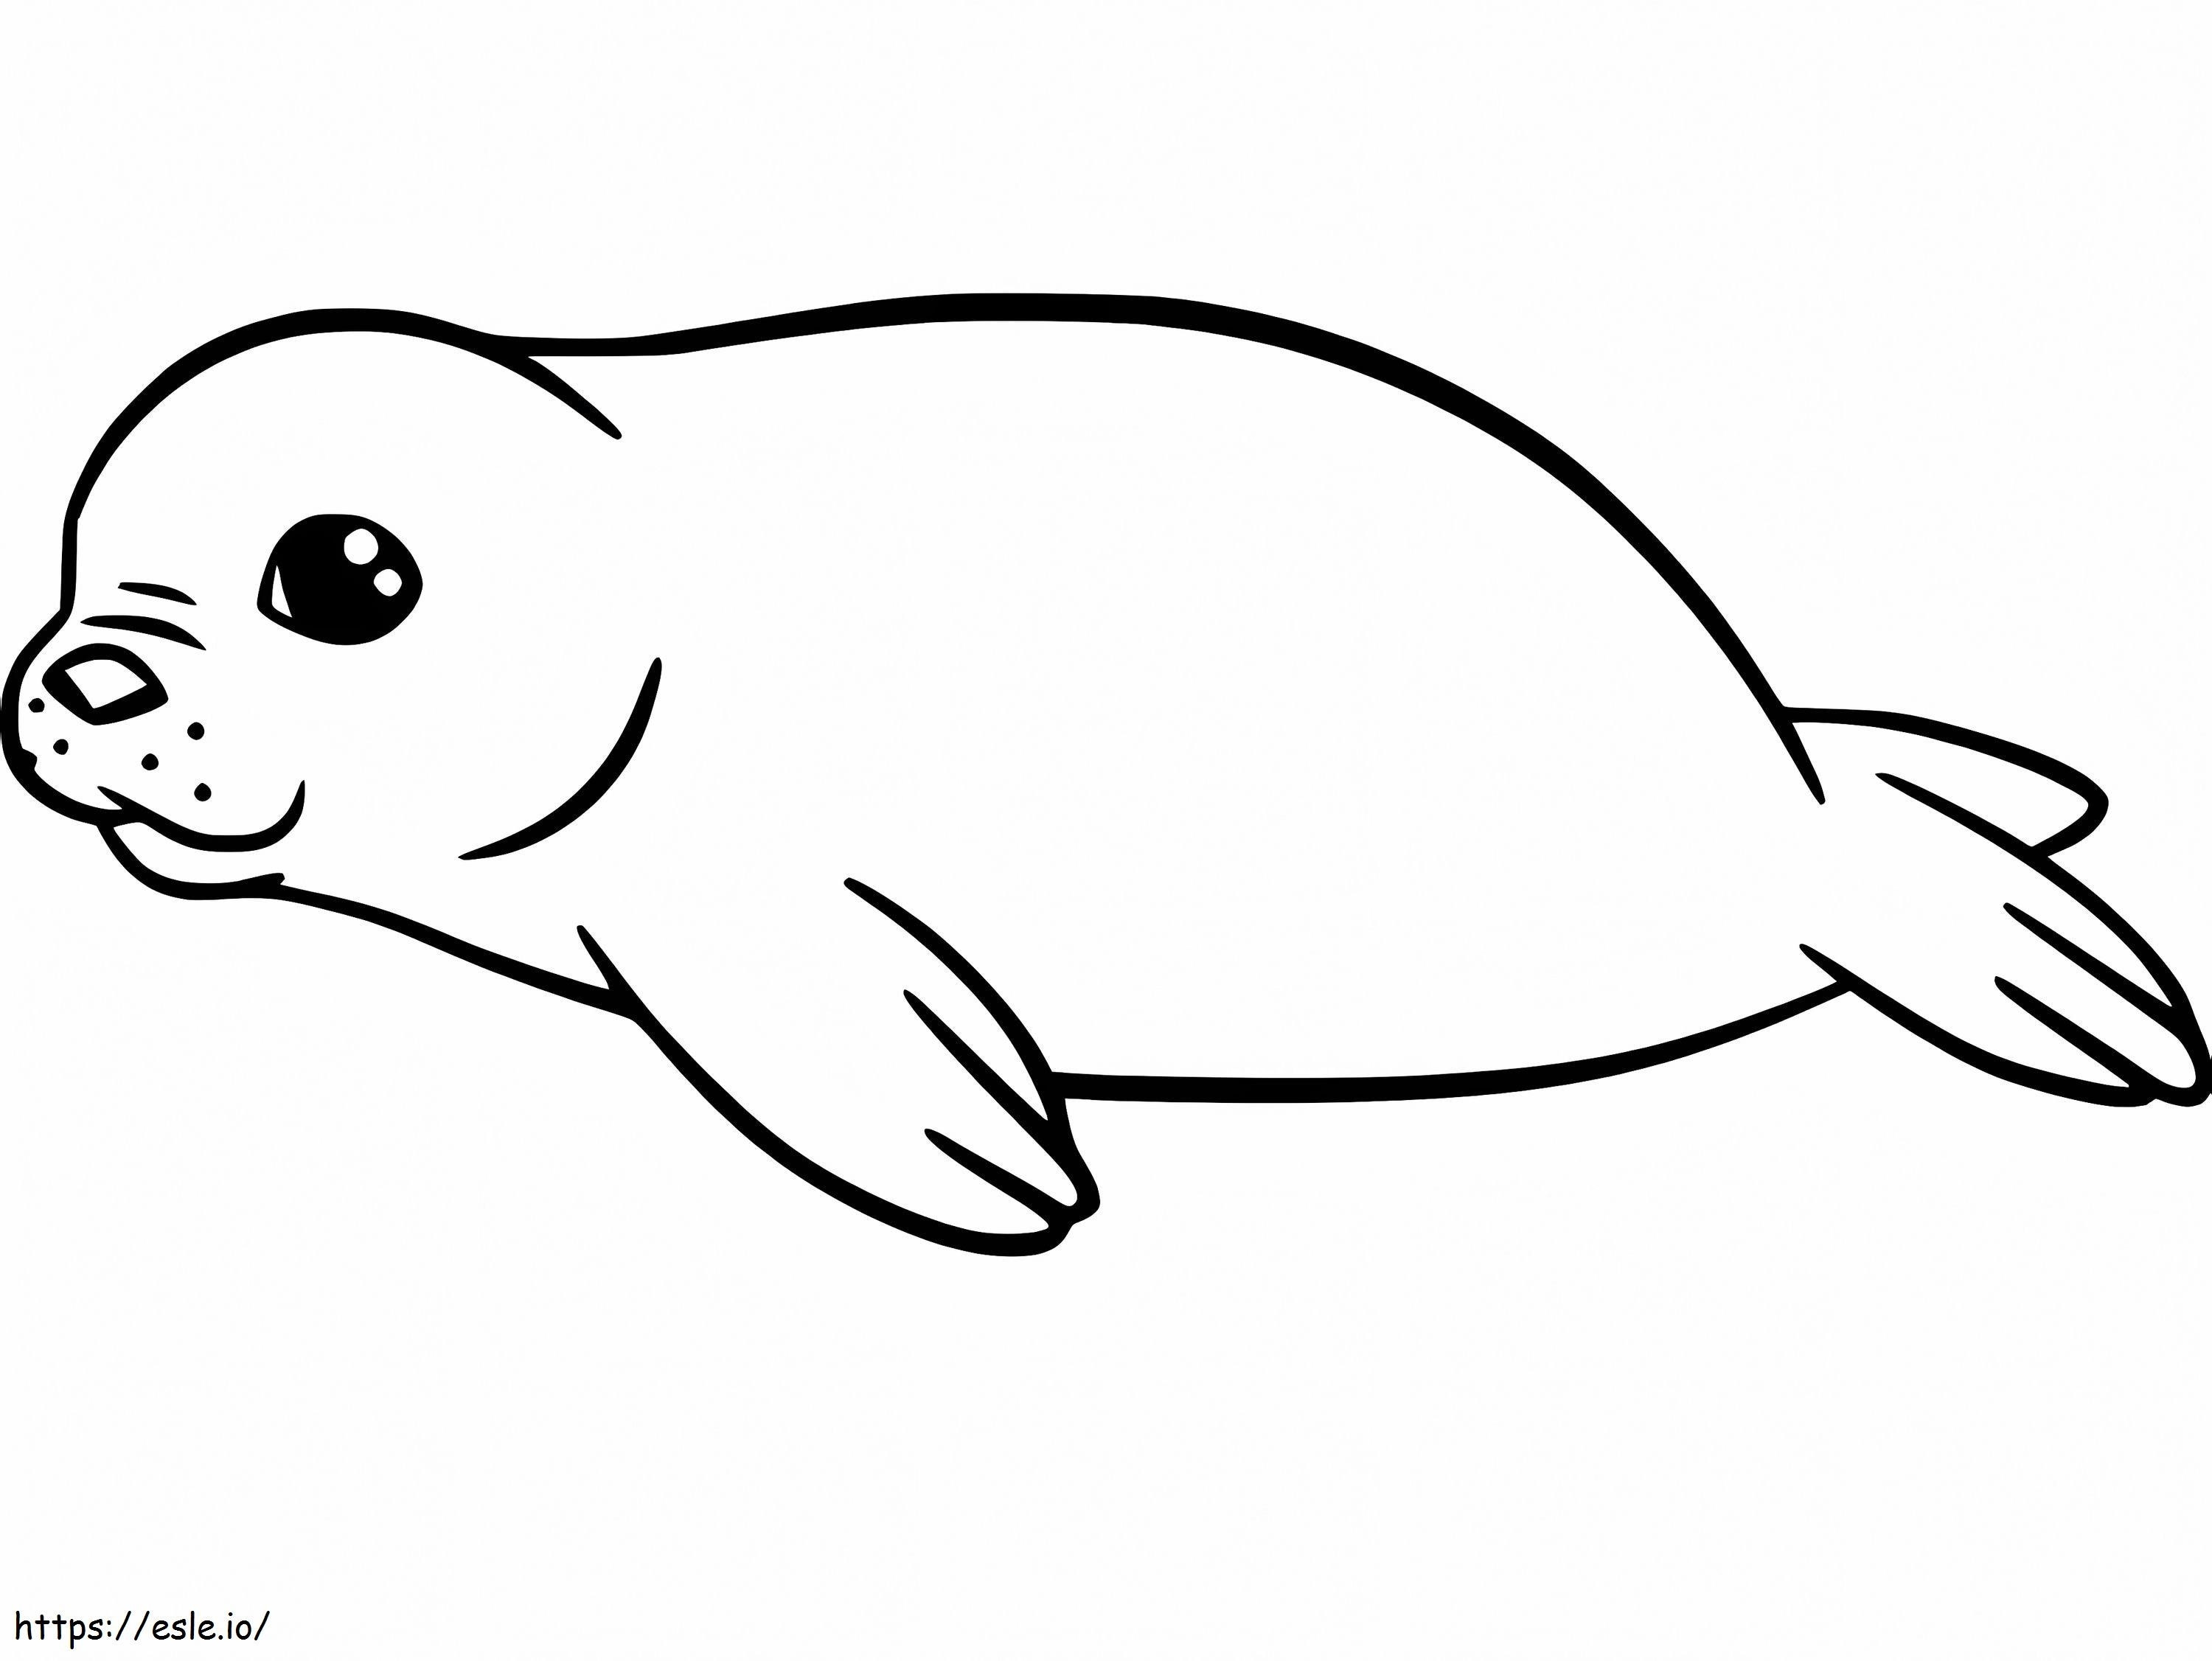 Cucciolo di foca da colorare